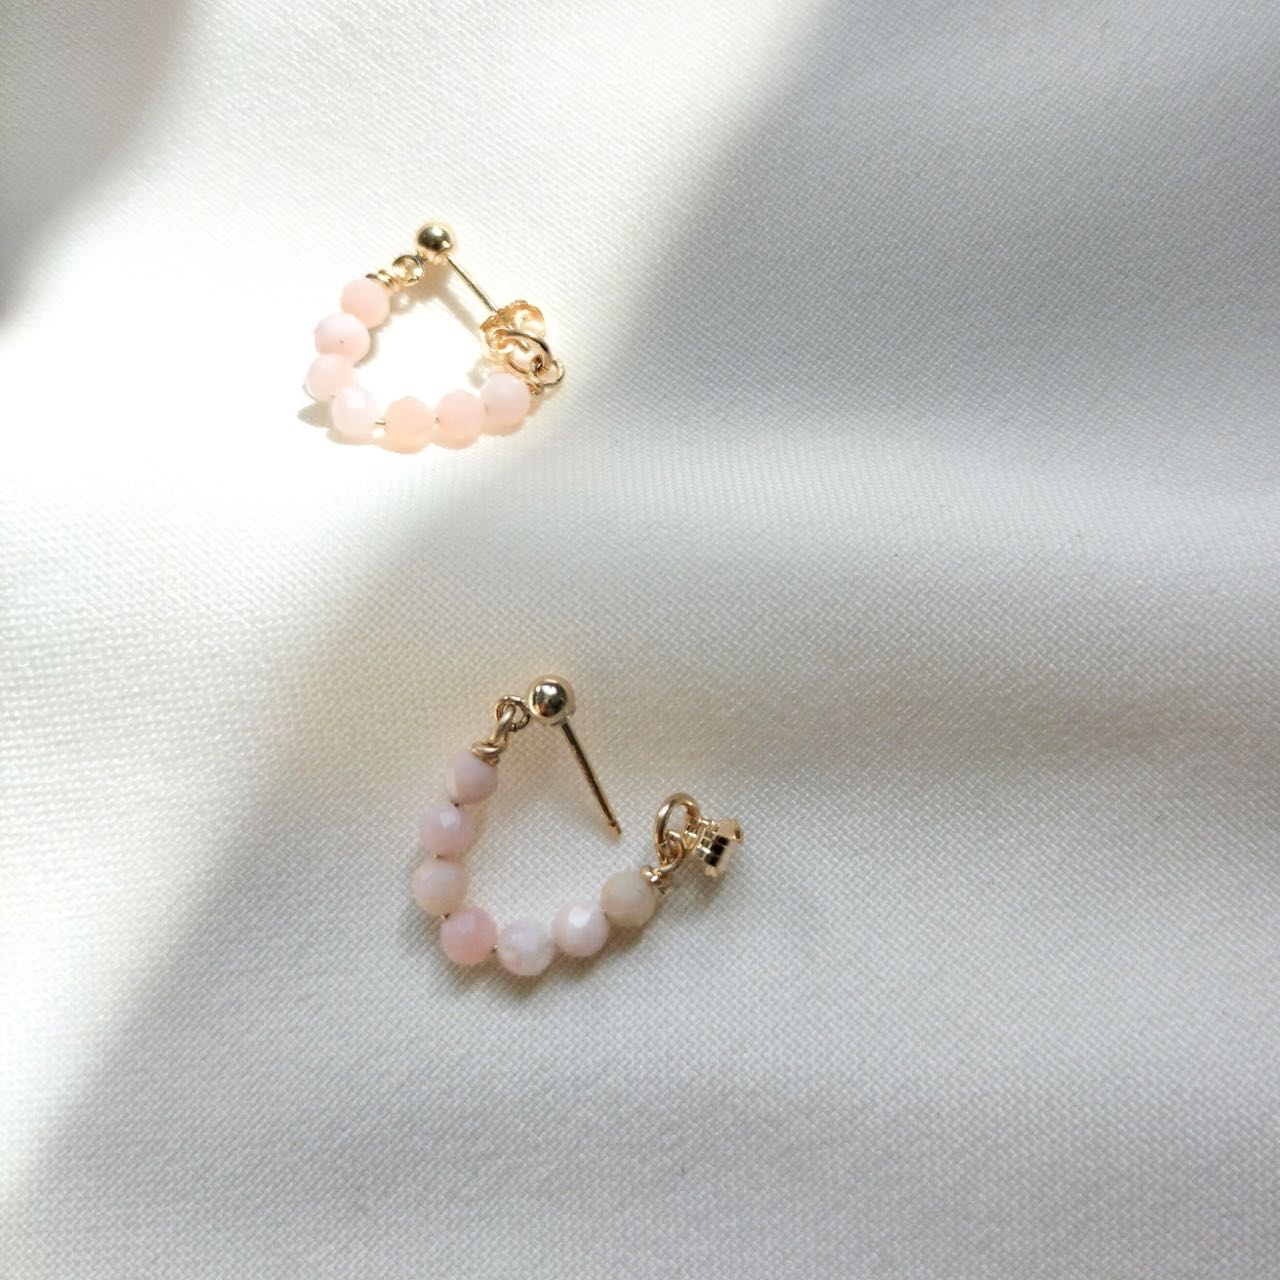 October birthstone earrings - Opal